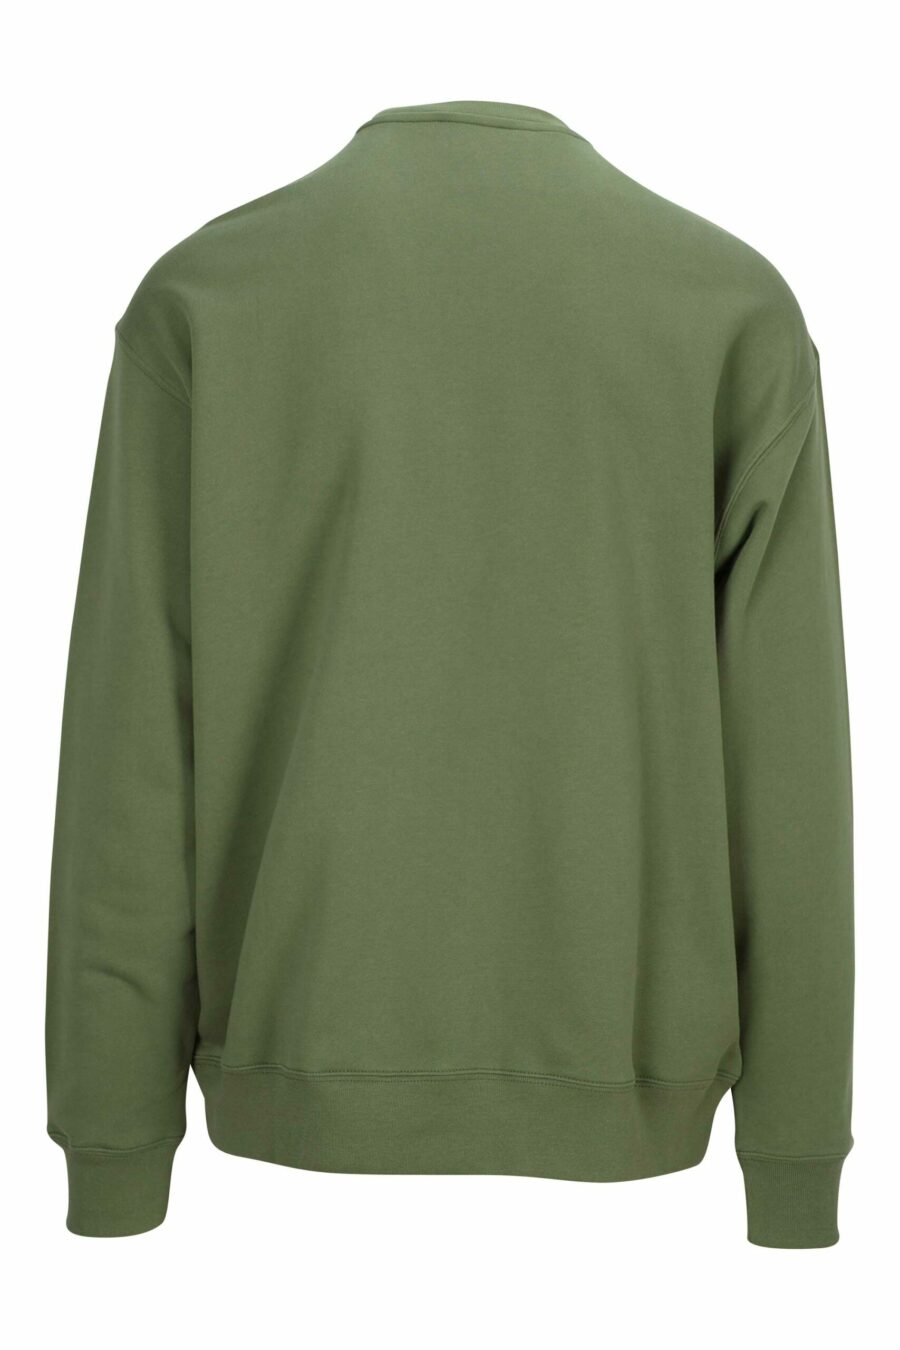 Militärgrünes Sweatshirt mit schwarzem "Teddy"-Maxilogo - 889316852639 1 skaliert